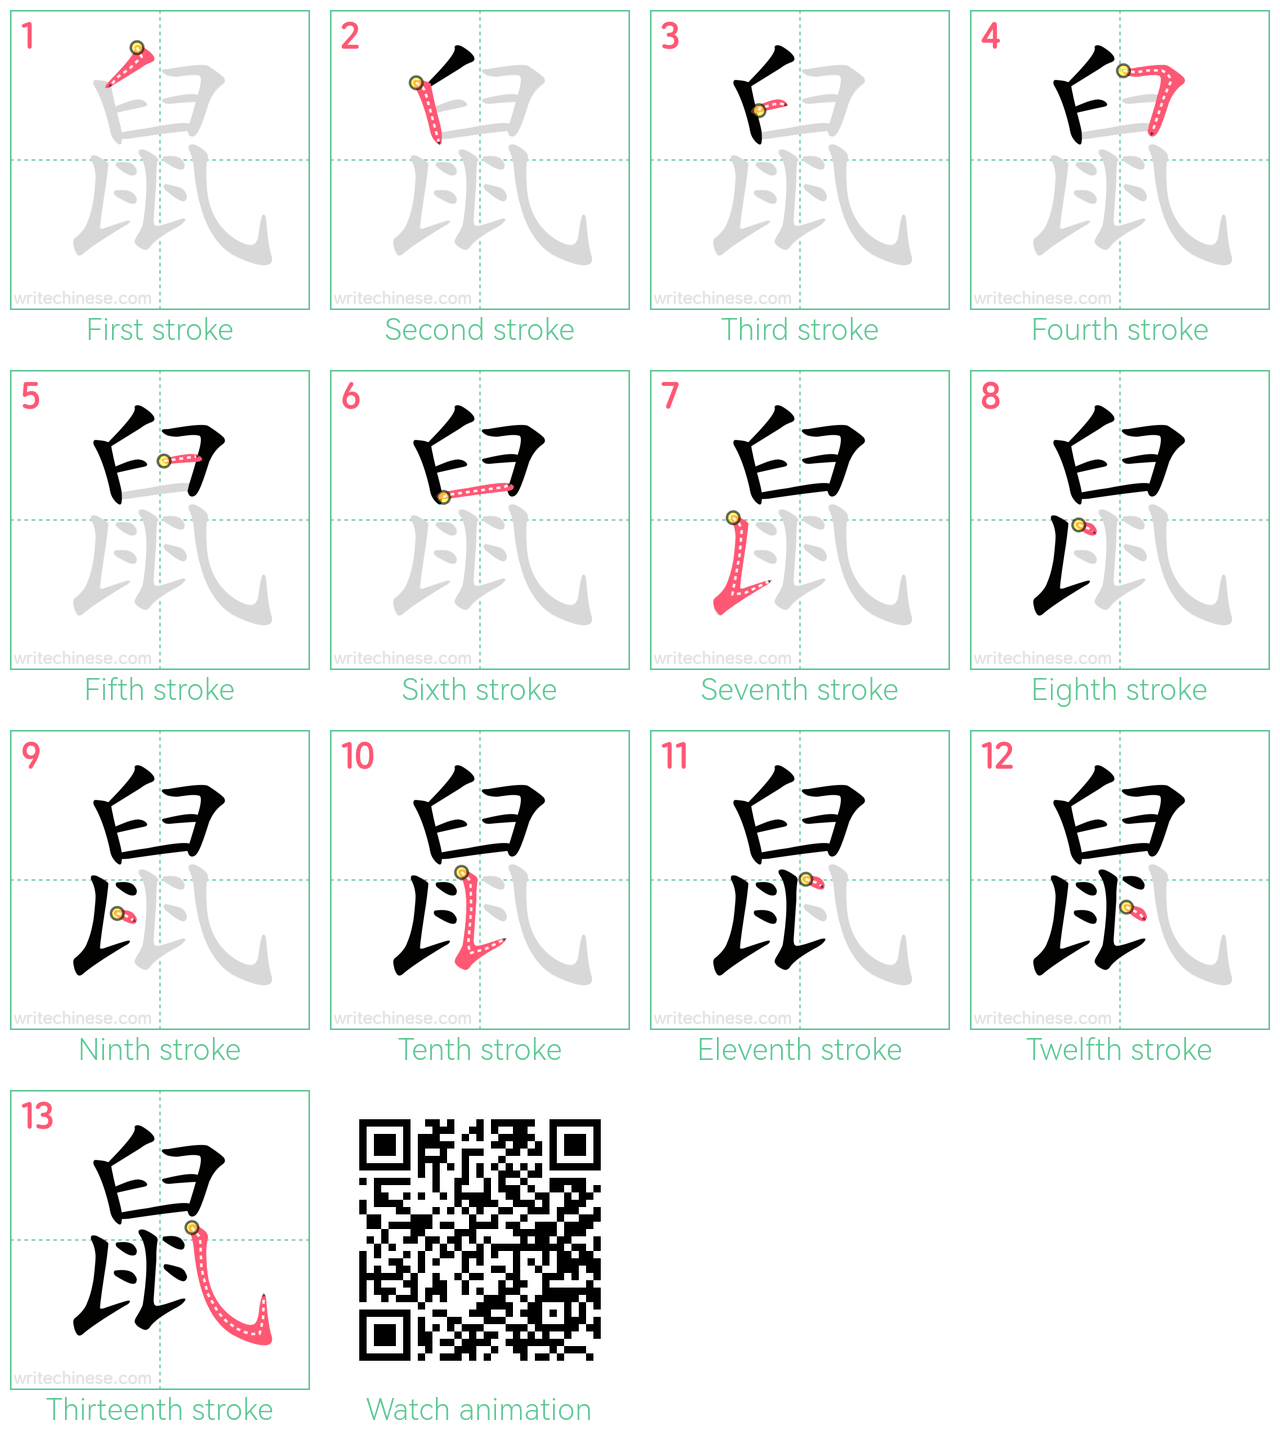 鼠 step-by-step stroke order diagrams